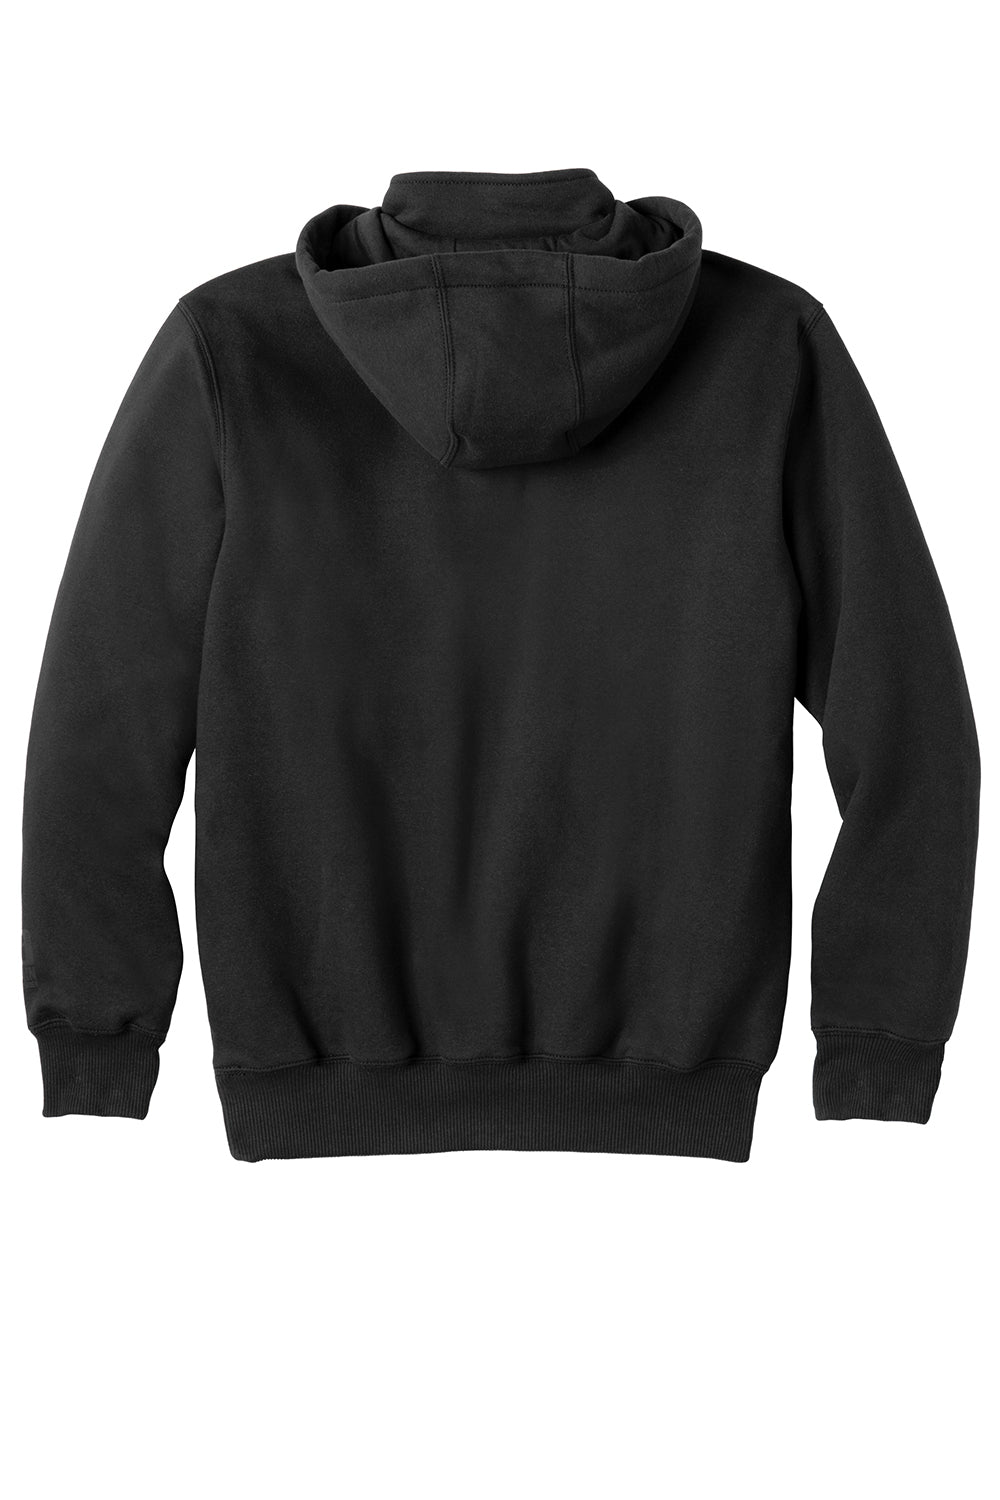 Carhartt CT100617 Mens Paxton Rain Defender Water Resistant 1/4 Zip Hooded Sweatshirt Hoodie Black Flat Back